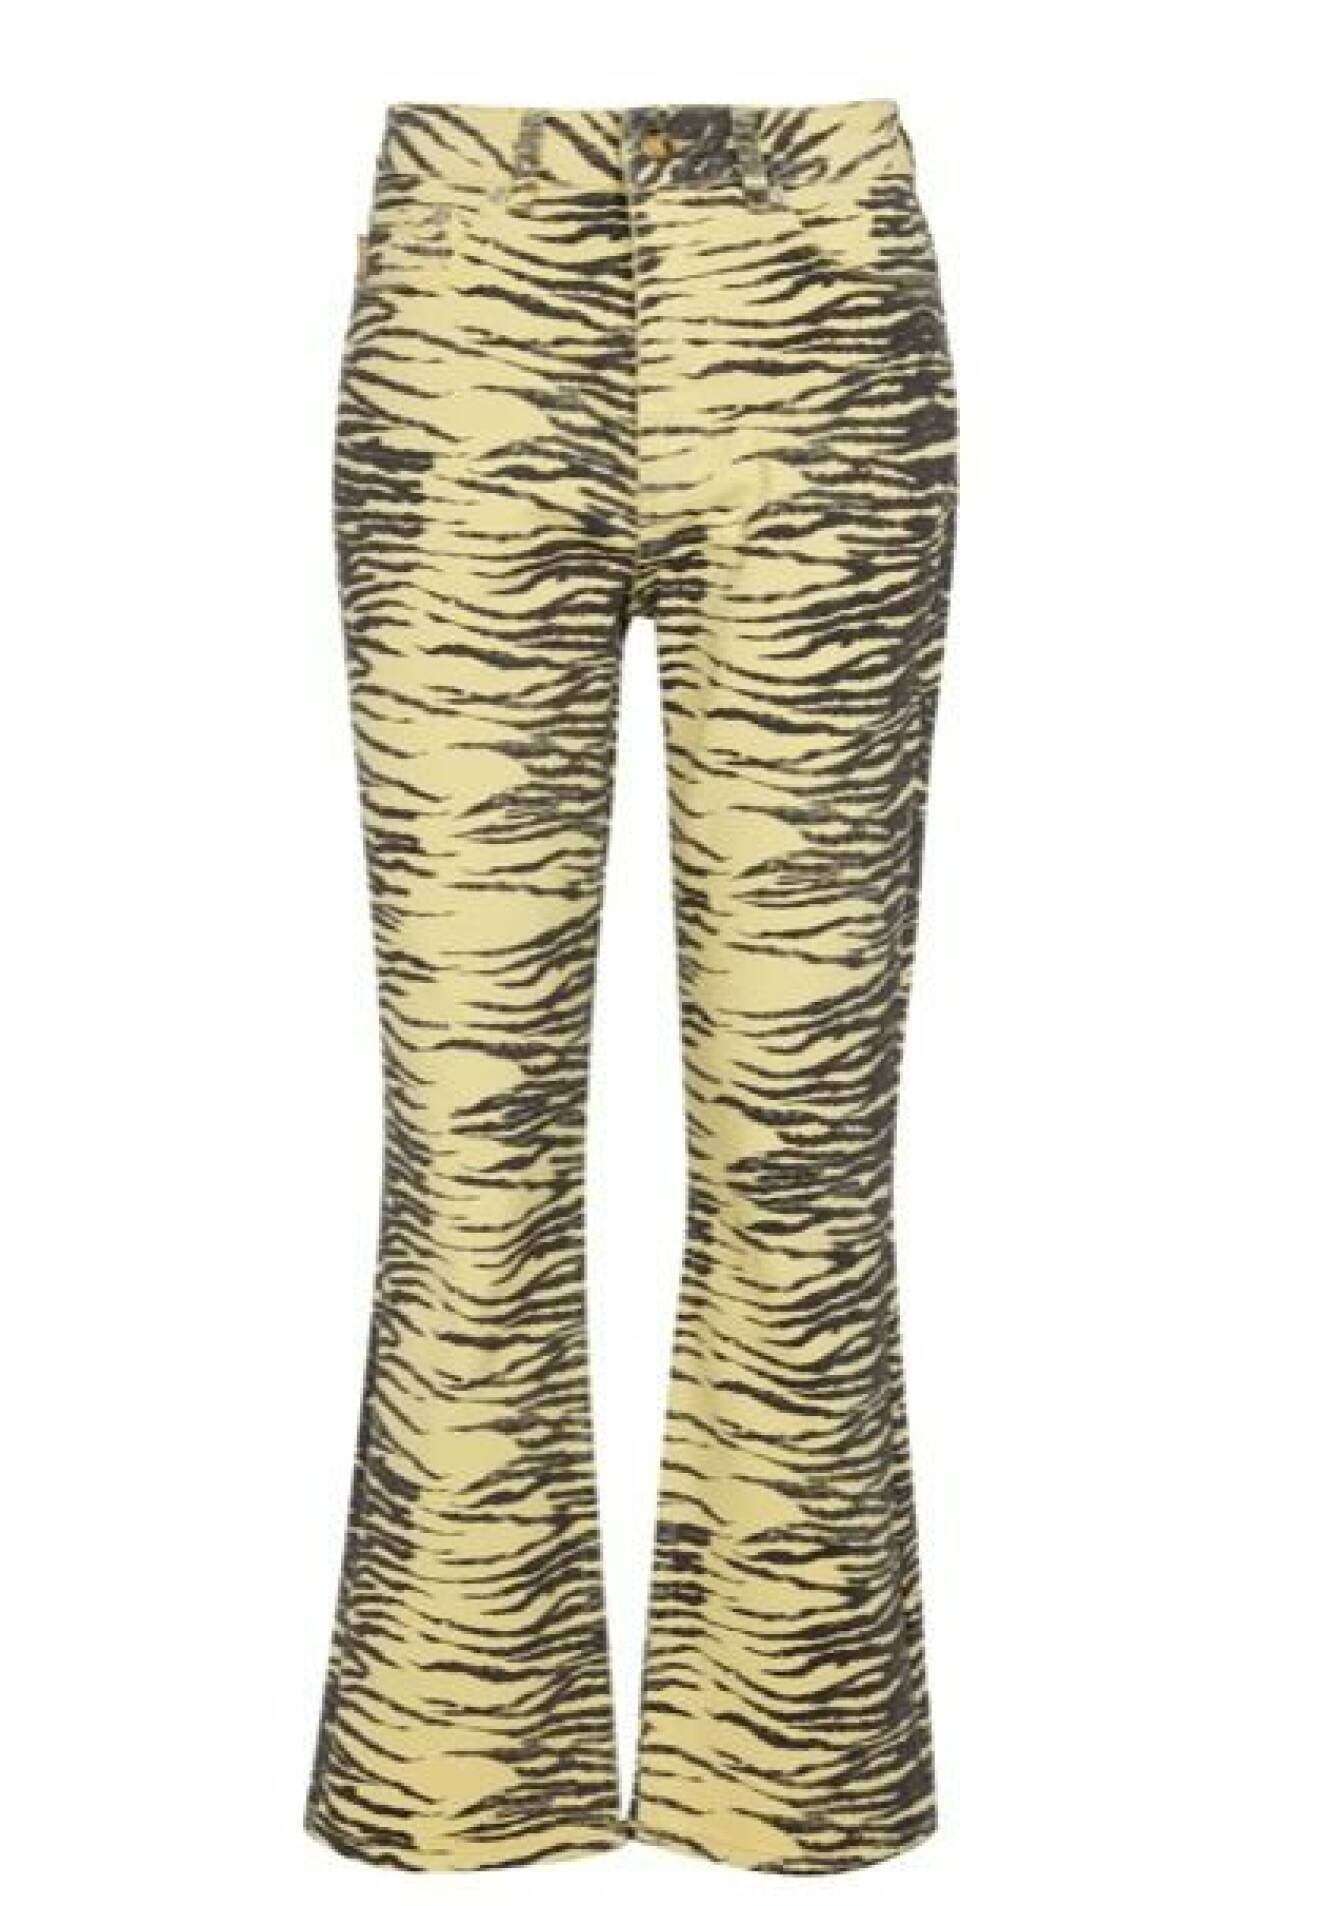 Tigermönstrade jeans i pastellgult och svart. Jeansen är croppade med utställda ben nertill. Jeans från Ganni.